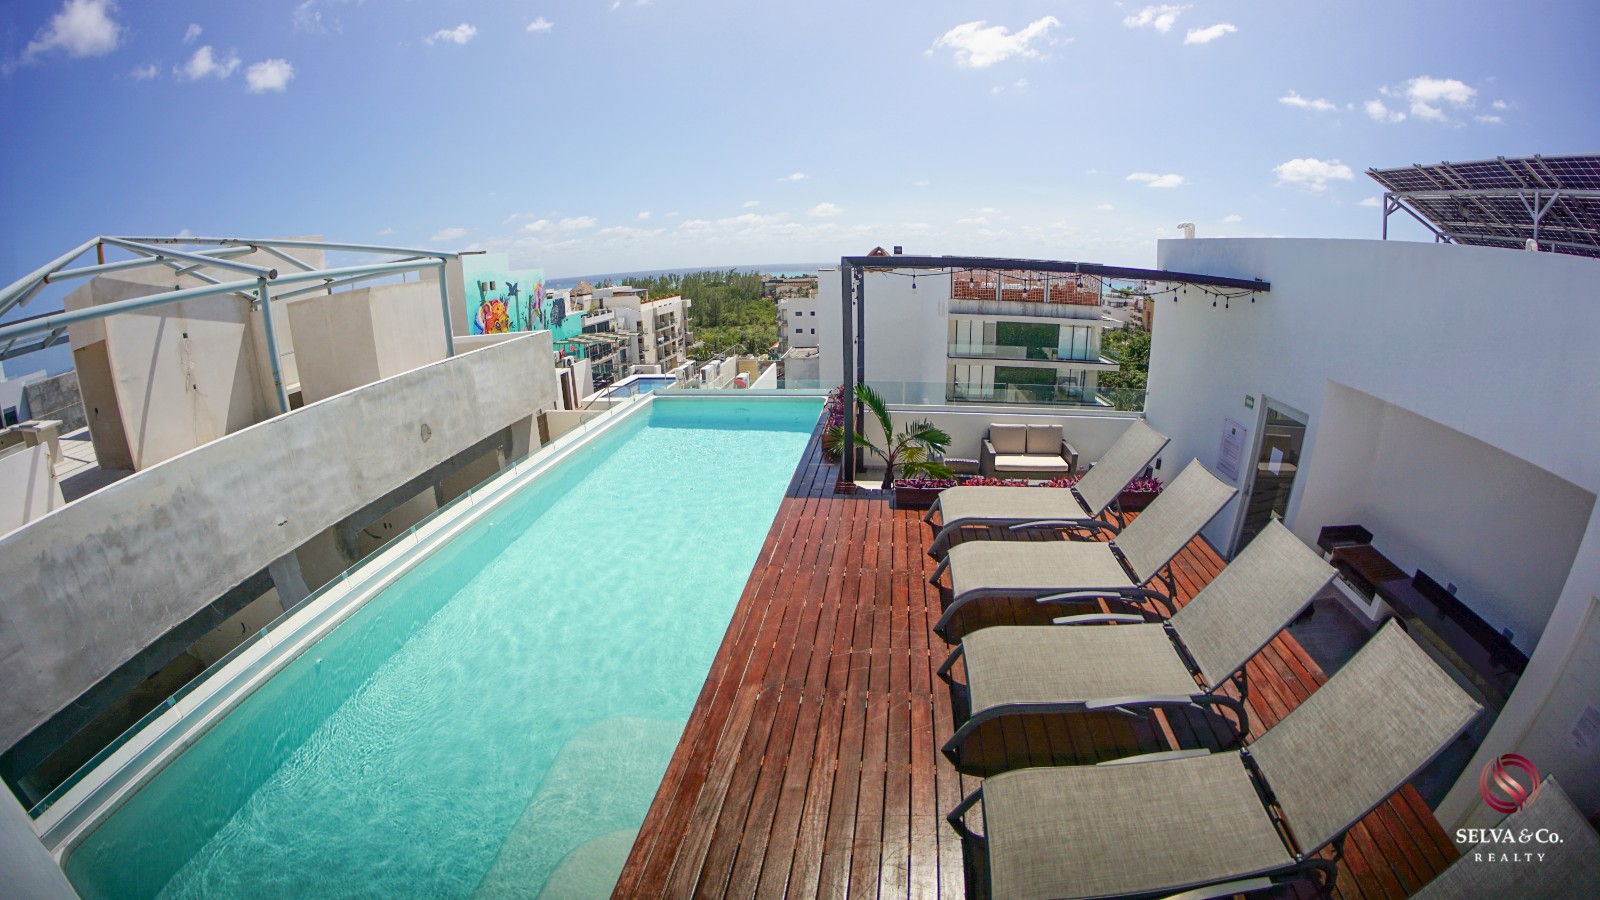 Condominio a  a 190 metros de la playa, vista al mar desde el rooftop, pasos de la Quinta avenida, en hotel boutique con room service.